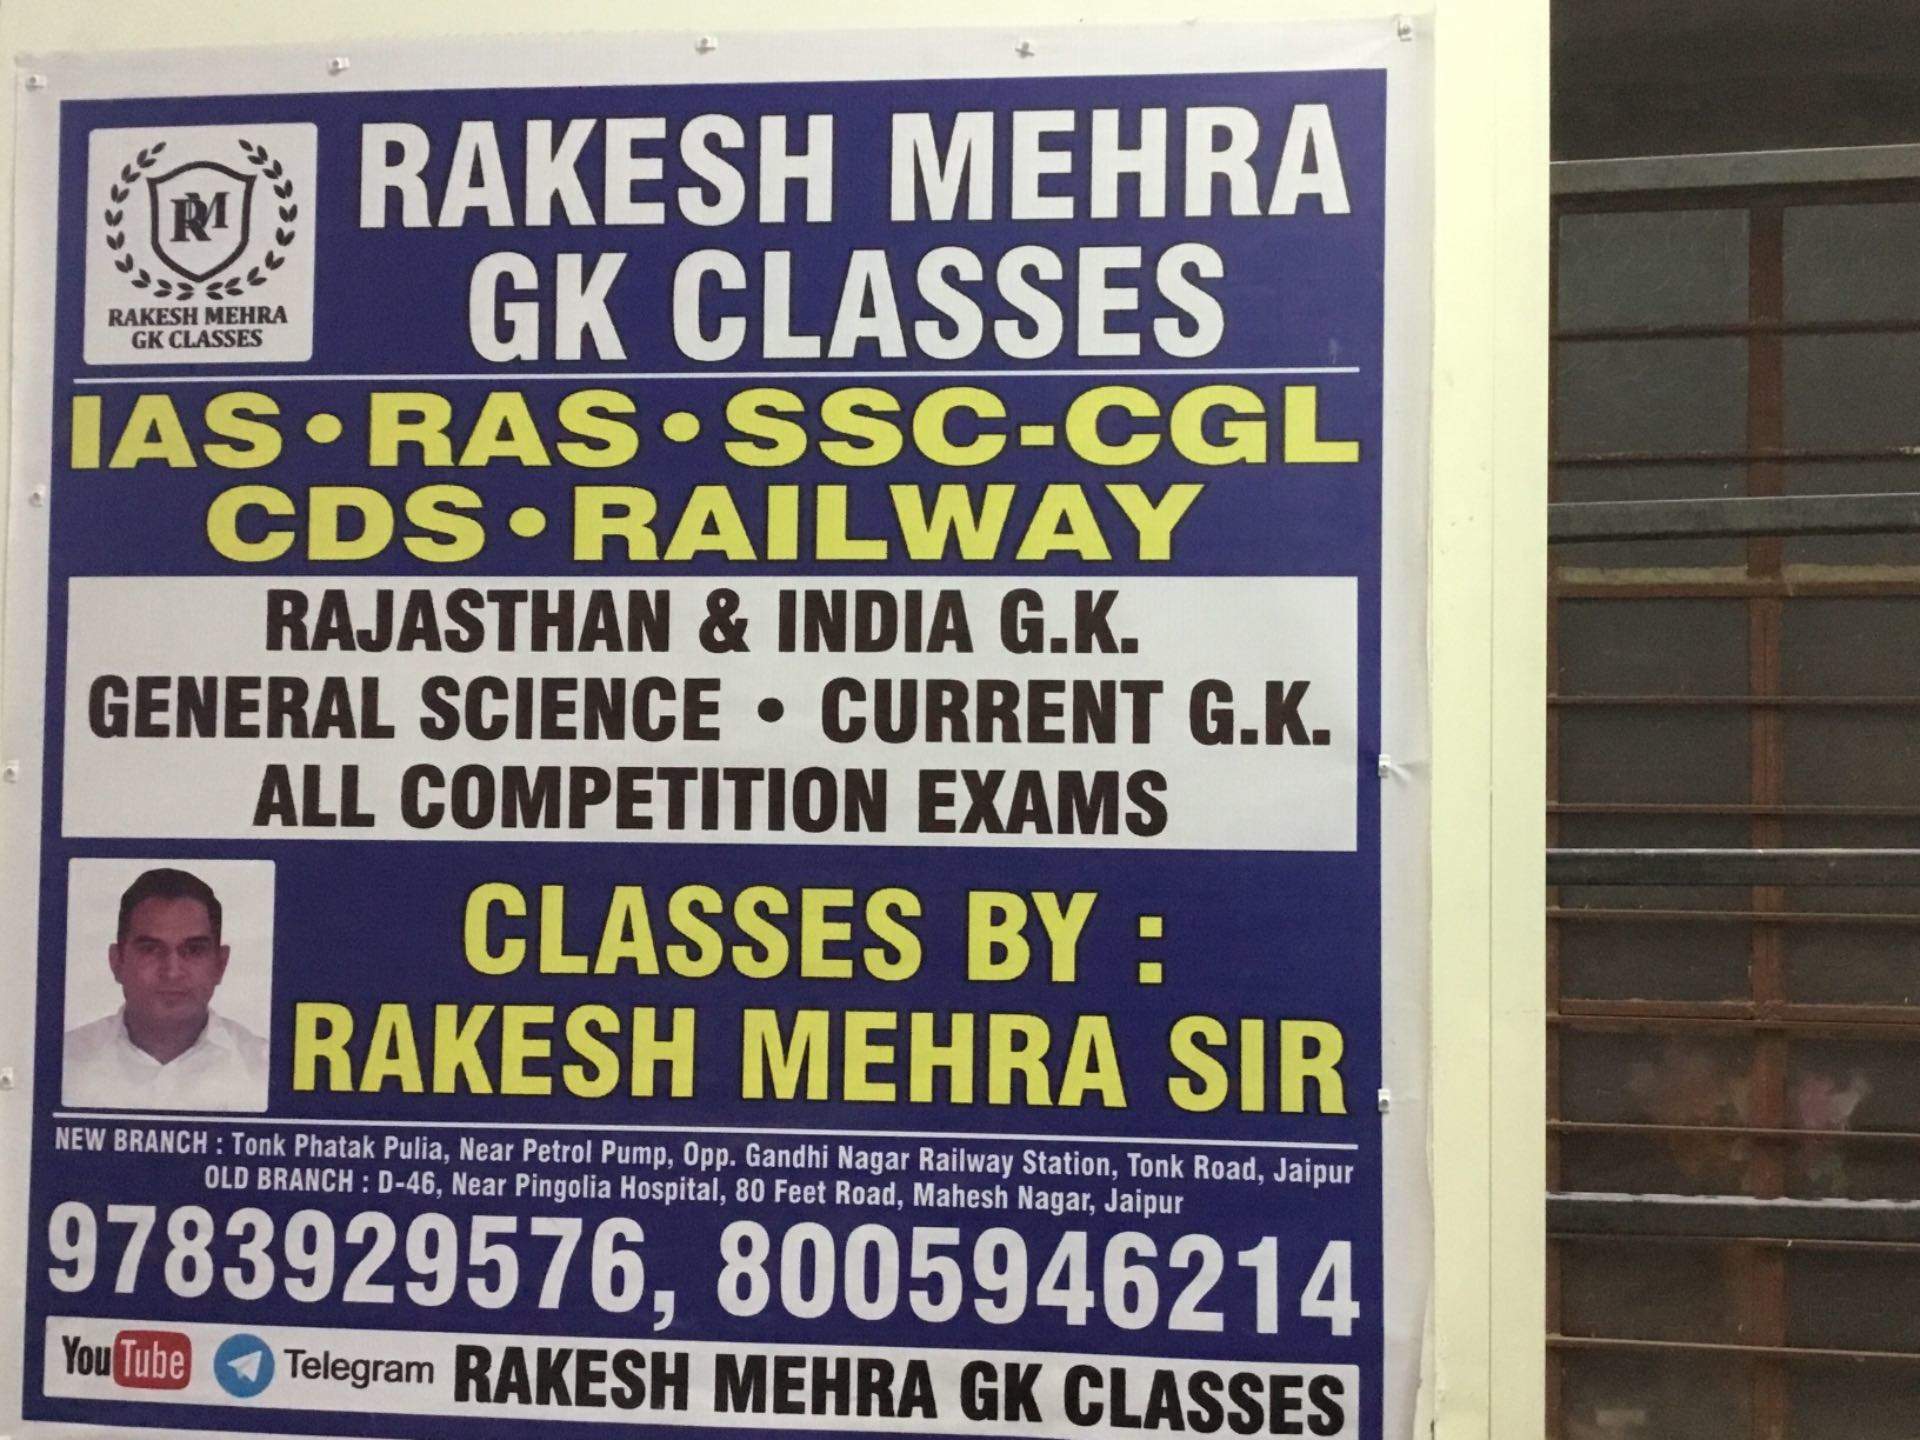 Rakesh Mehra G.K. Classes